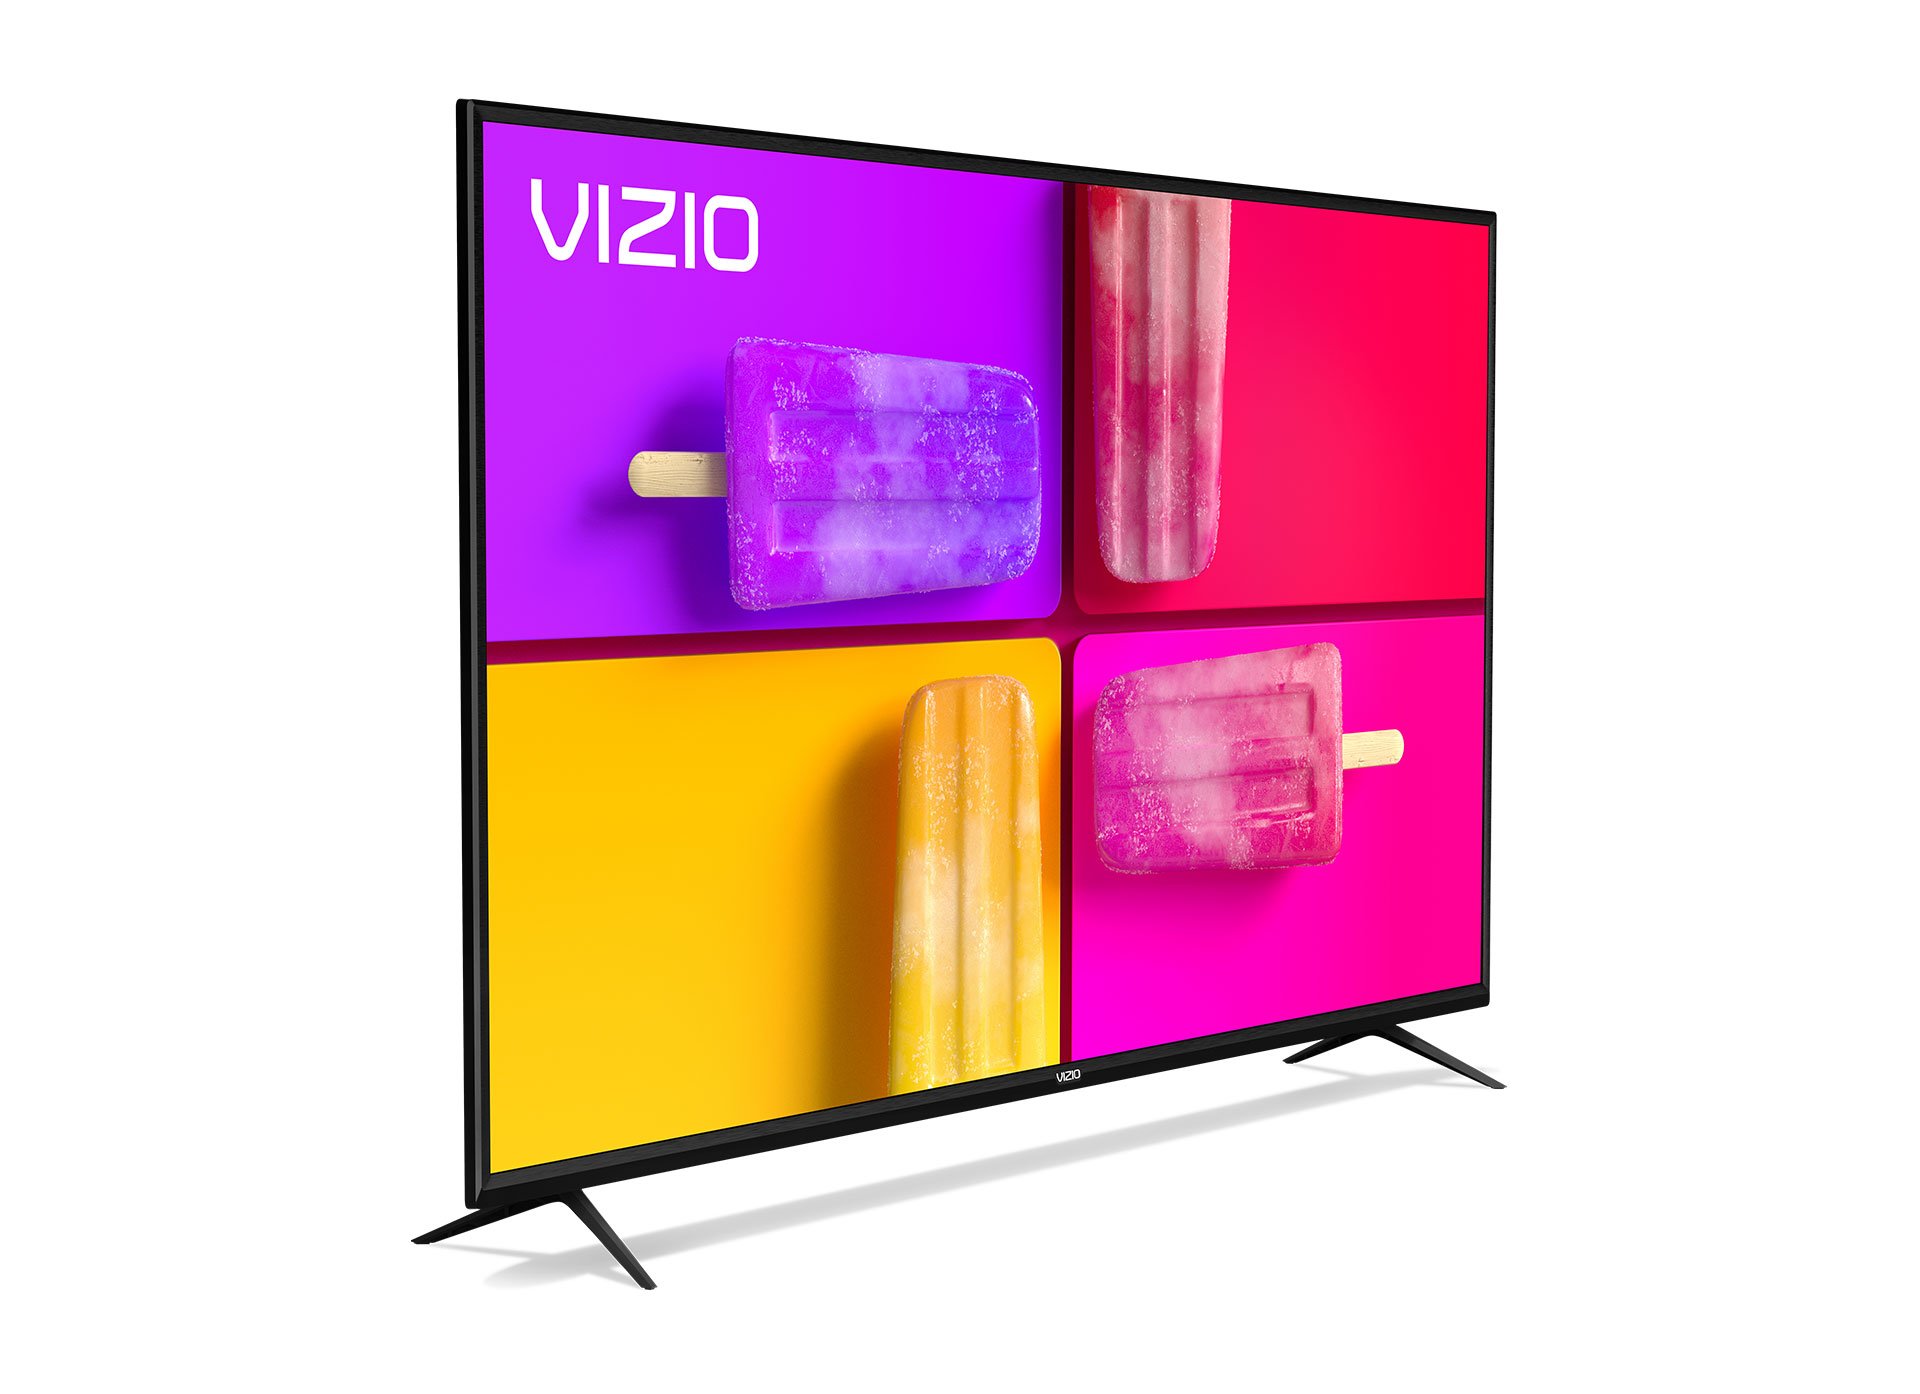 TV VIZIO 65" V-Series/4K UHD/IQ Active Processor/HDR/HDR10+/Control de Voz/FreeSync/Bluetooth V655-J04 - VIZIO